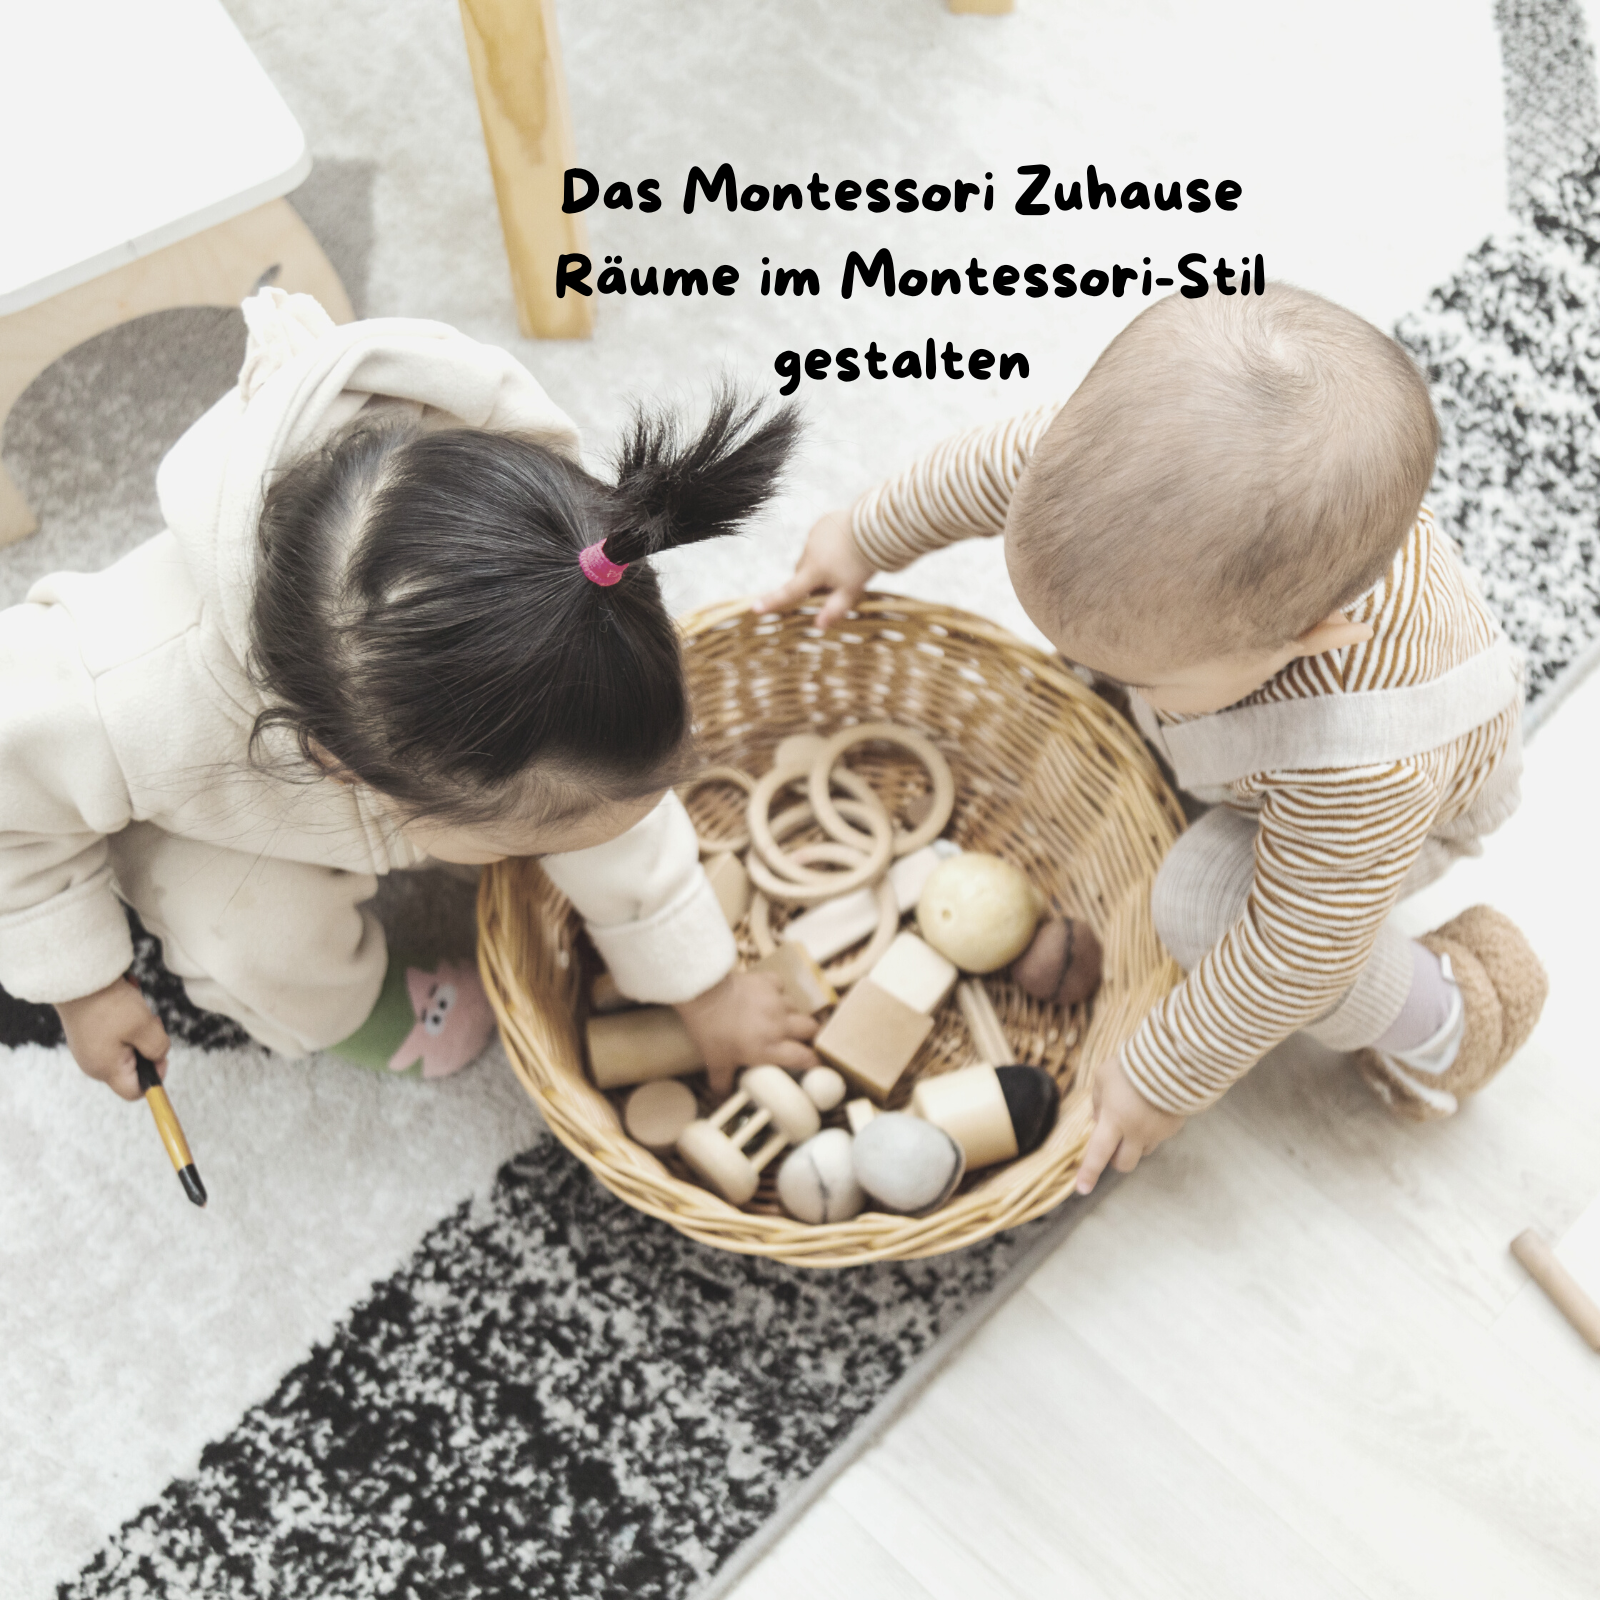 Das Montessori Zuhause – Räume im Montessori-Stil gestalten